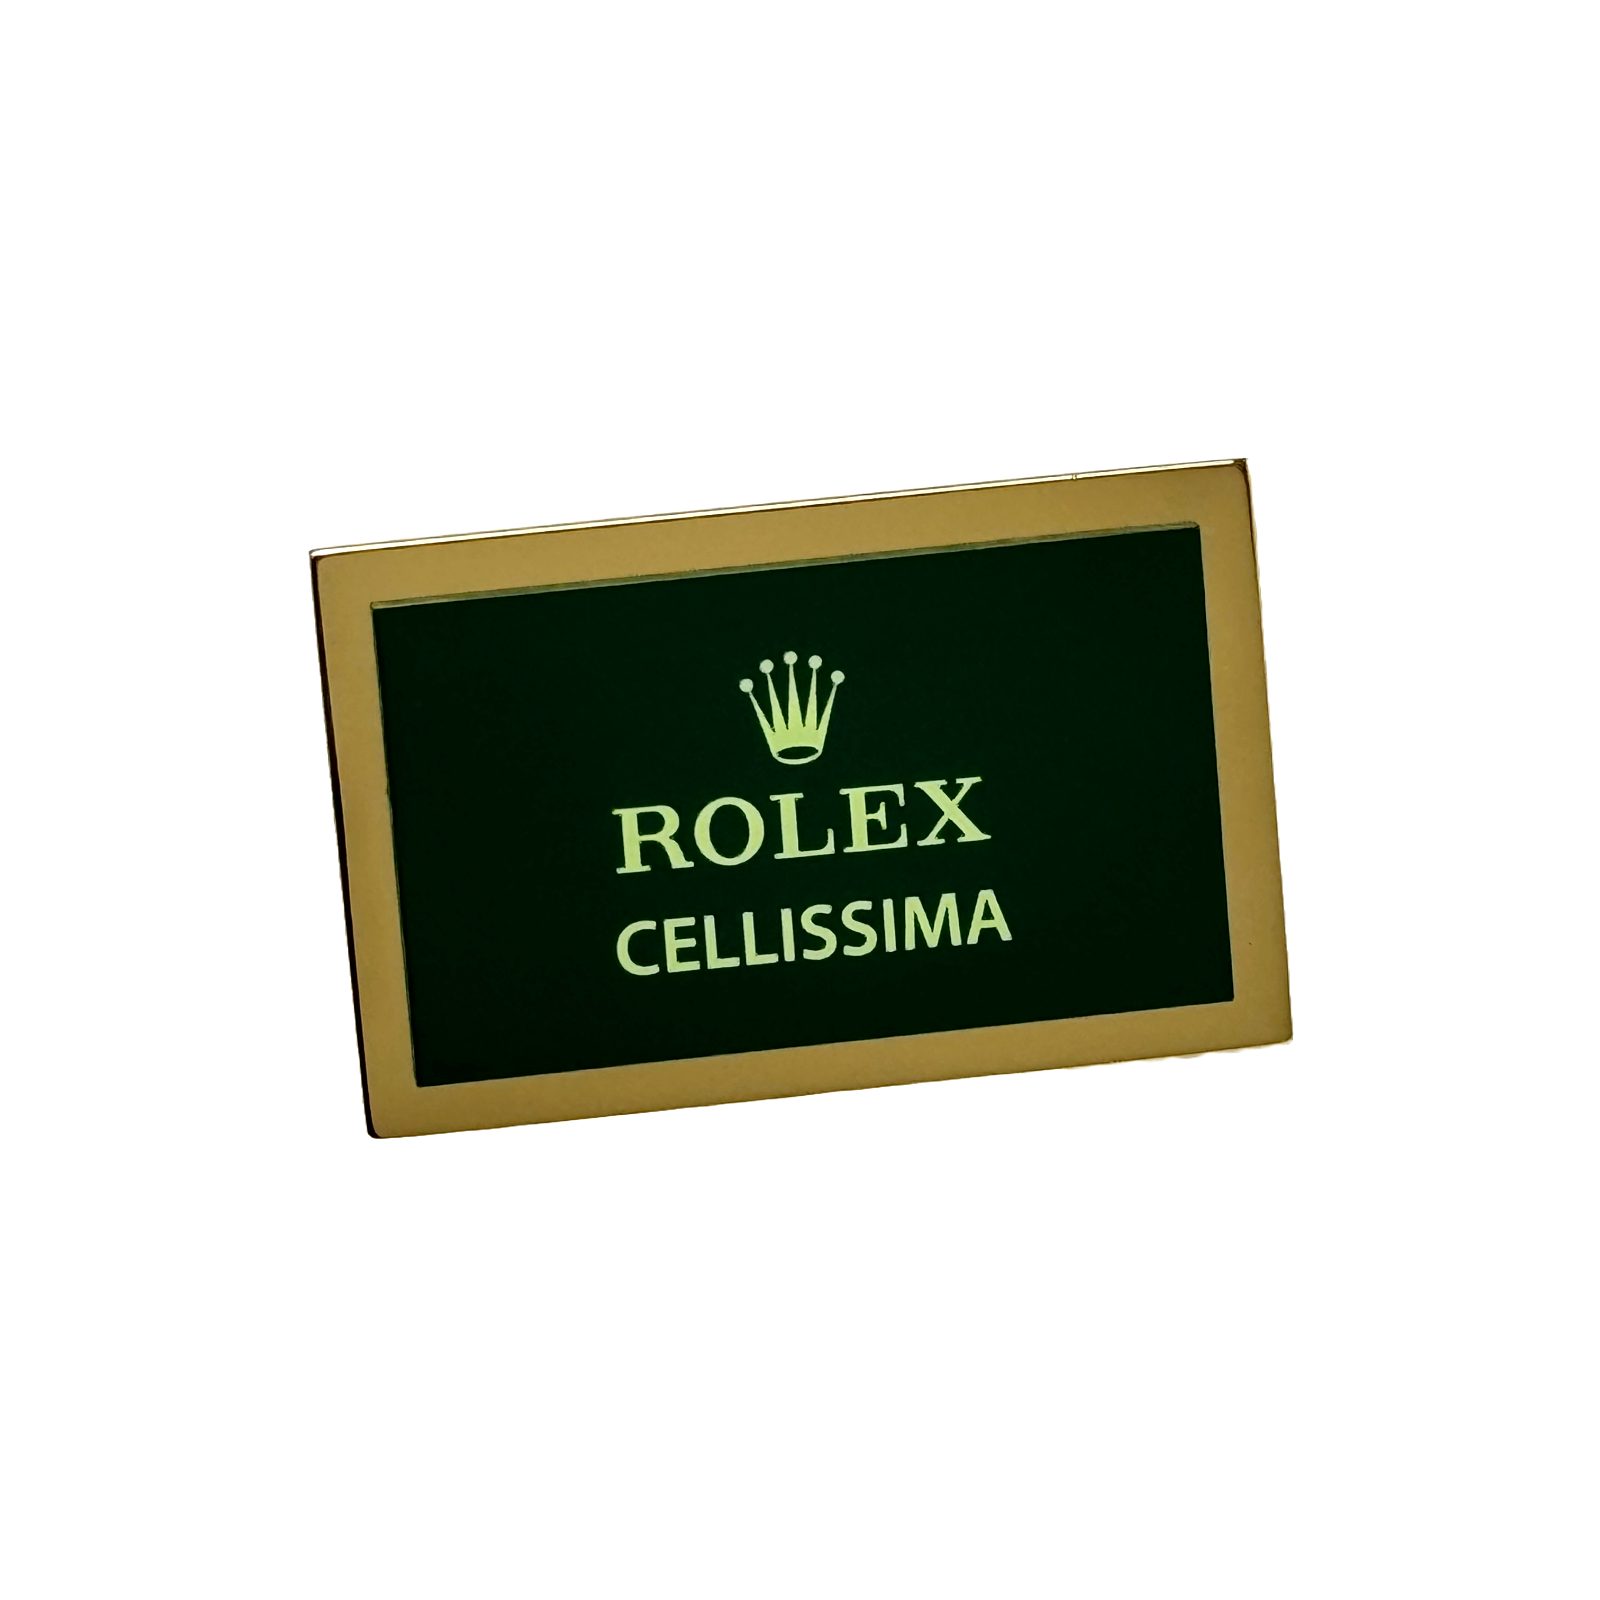 Rolex Cellissima Display Aufsteller Schild Konzessionär standee sign